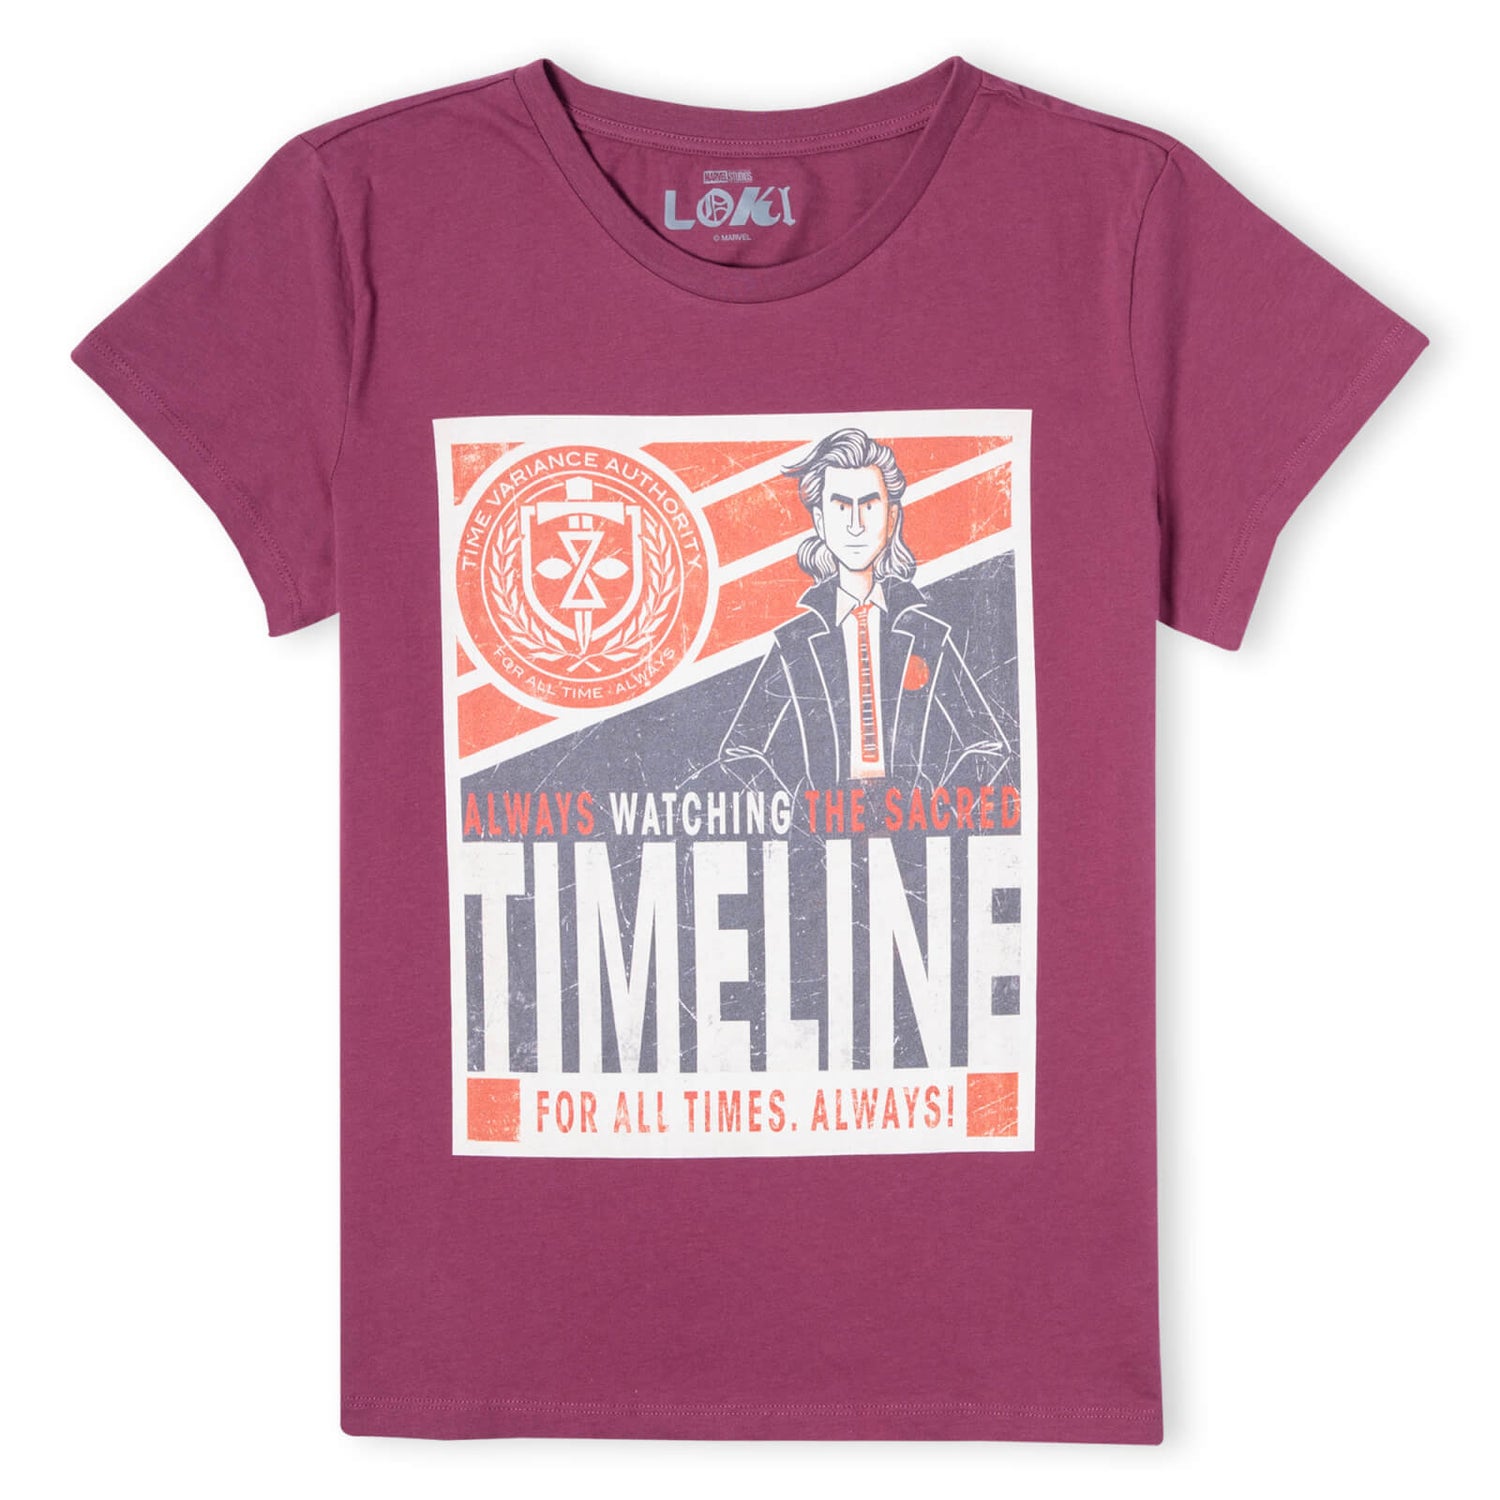 Marvel Timeline Women's T-Shirt - Burgundy